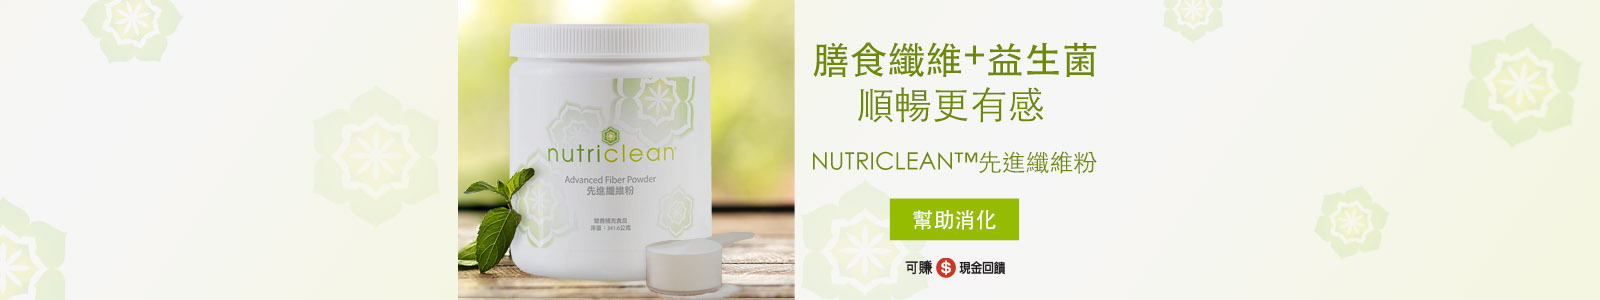 膳食纖維+益生菌 順暢更有感 幫助消化 nutriclean™先進纖維粉